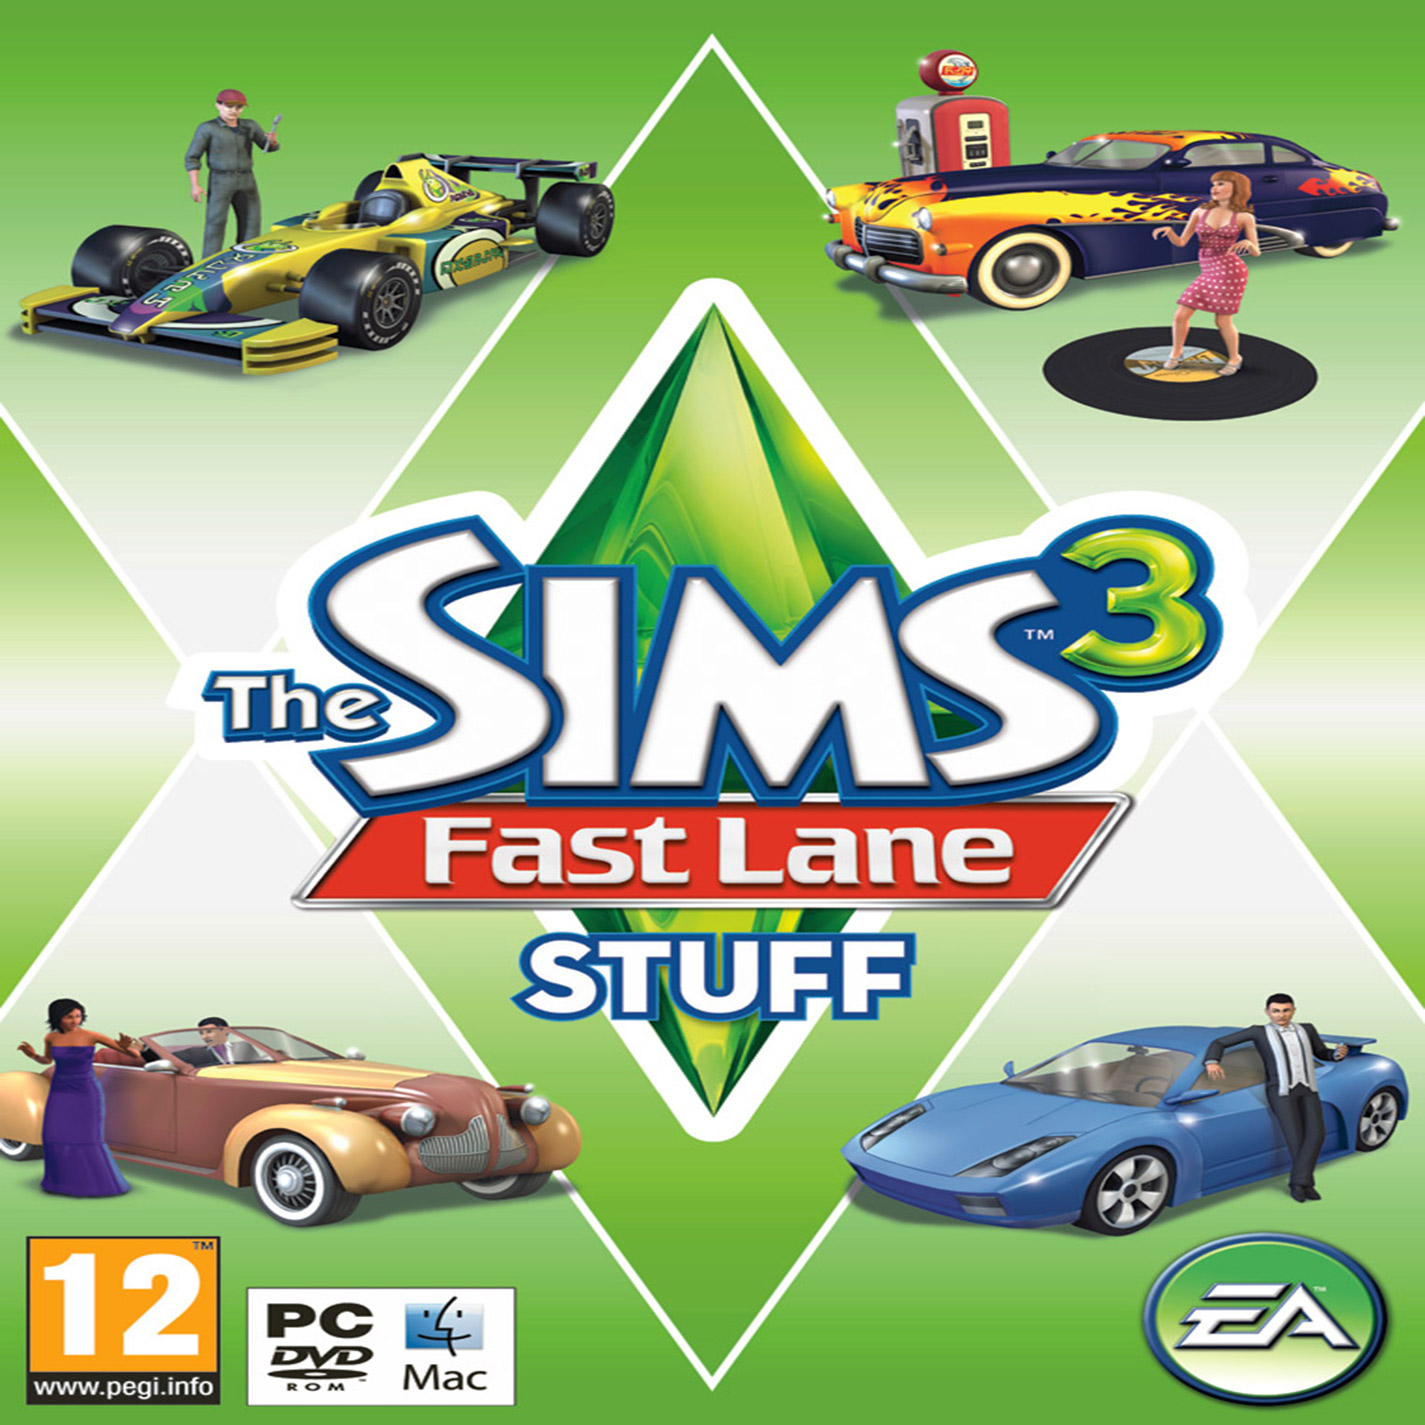 Фаст лейн. Fast Lane stuff. SIMS 3 fast Lane stuff. The SIMS 3 fast Lane stuff Скриншоты.